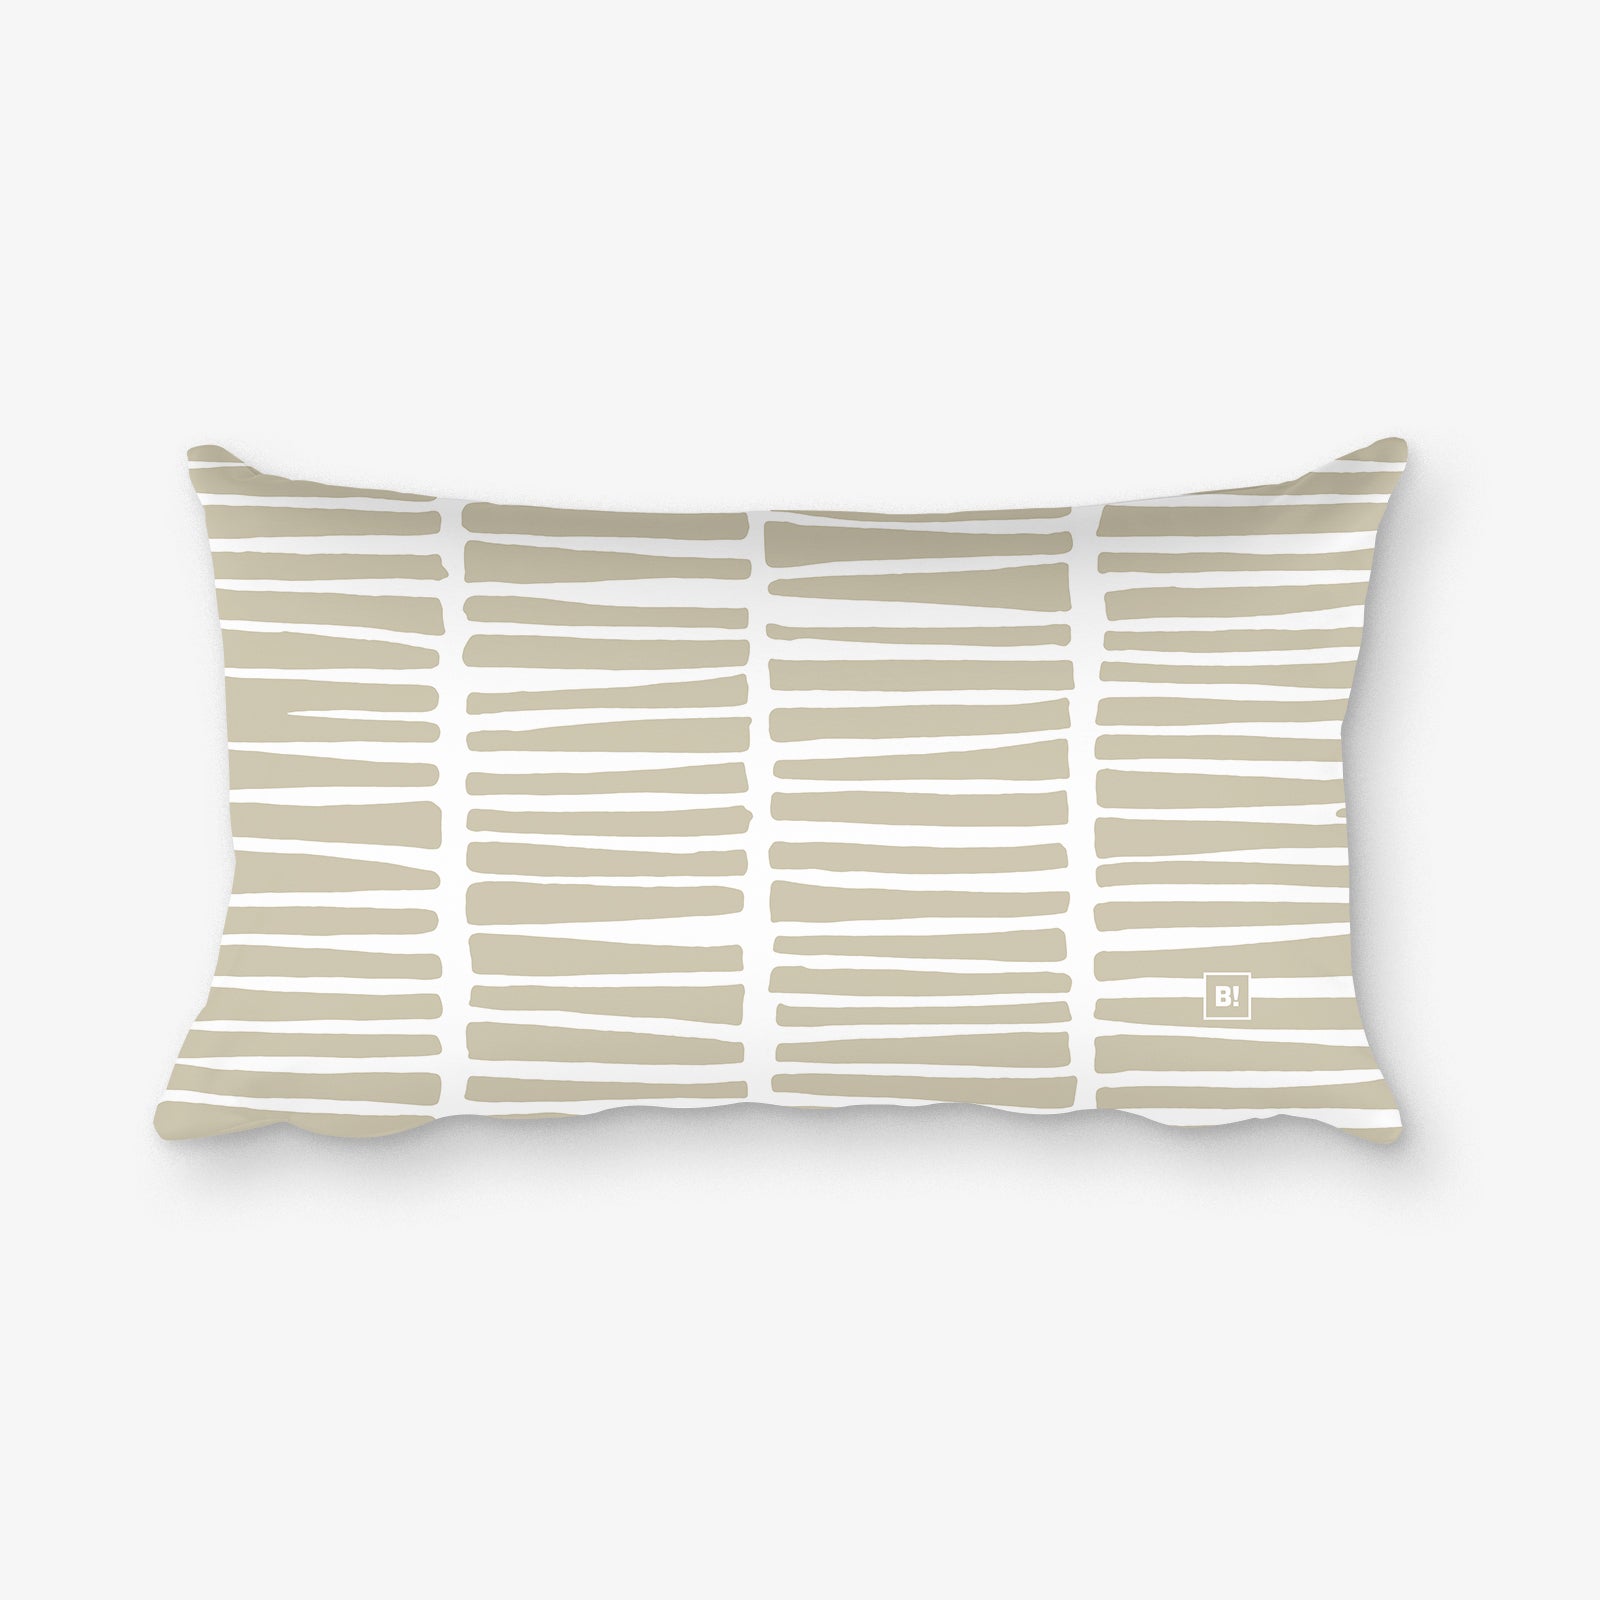 Binspired Wild Life - Sahara Sand - Rectangular Pillow Cover